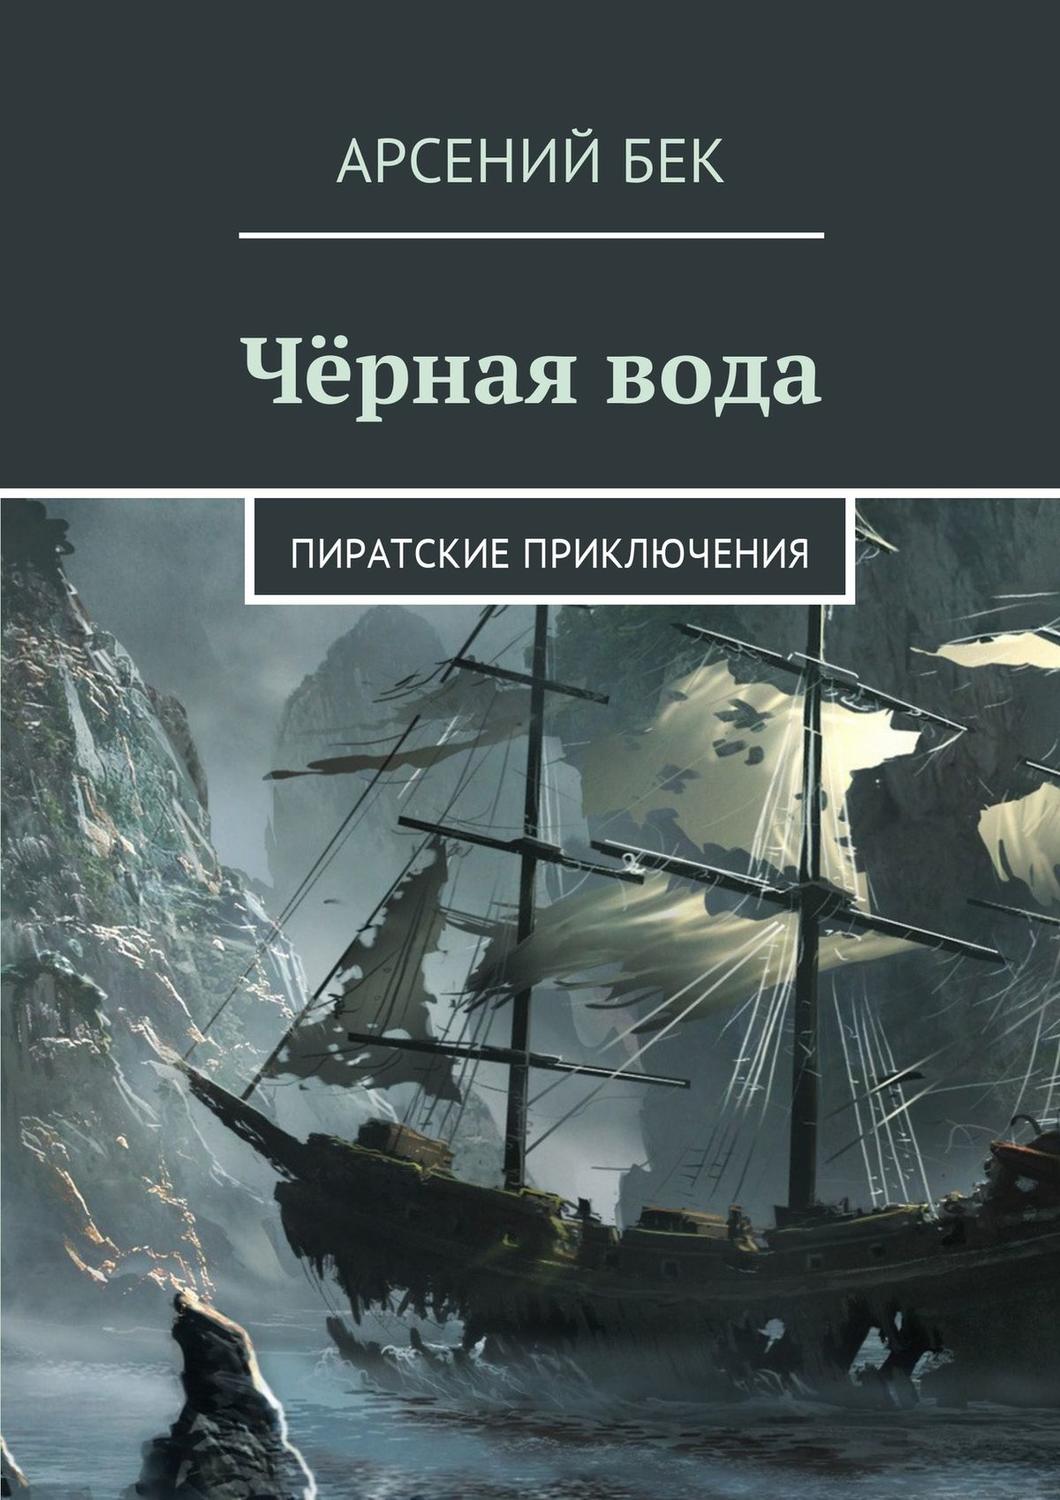 Книги про приключения пиратов. Книги о пиратах и приключениях. Пиратские приключения. Темная вода книга. Черная вода книга.